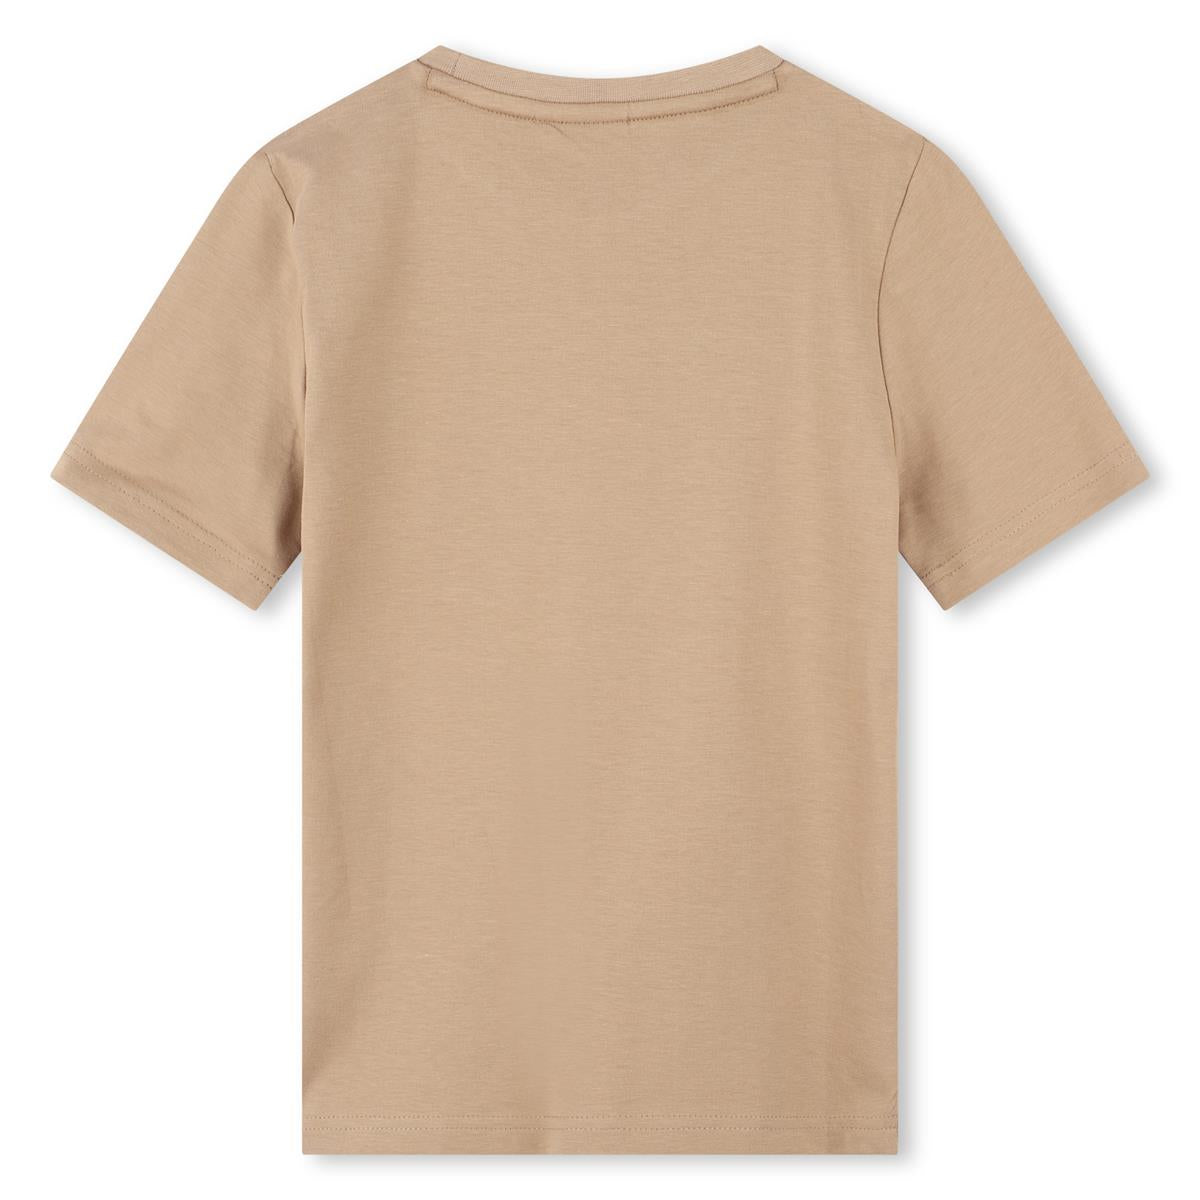 Boys Beige Cotton T-Shirt